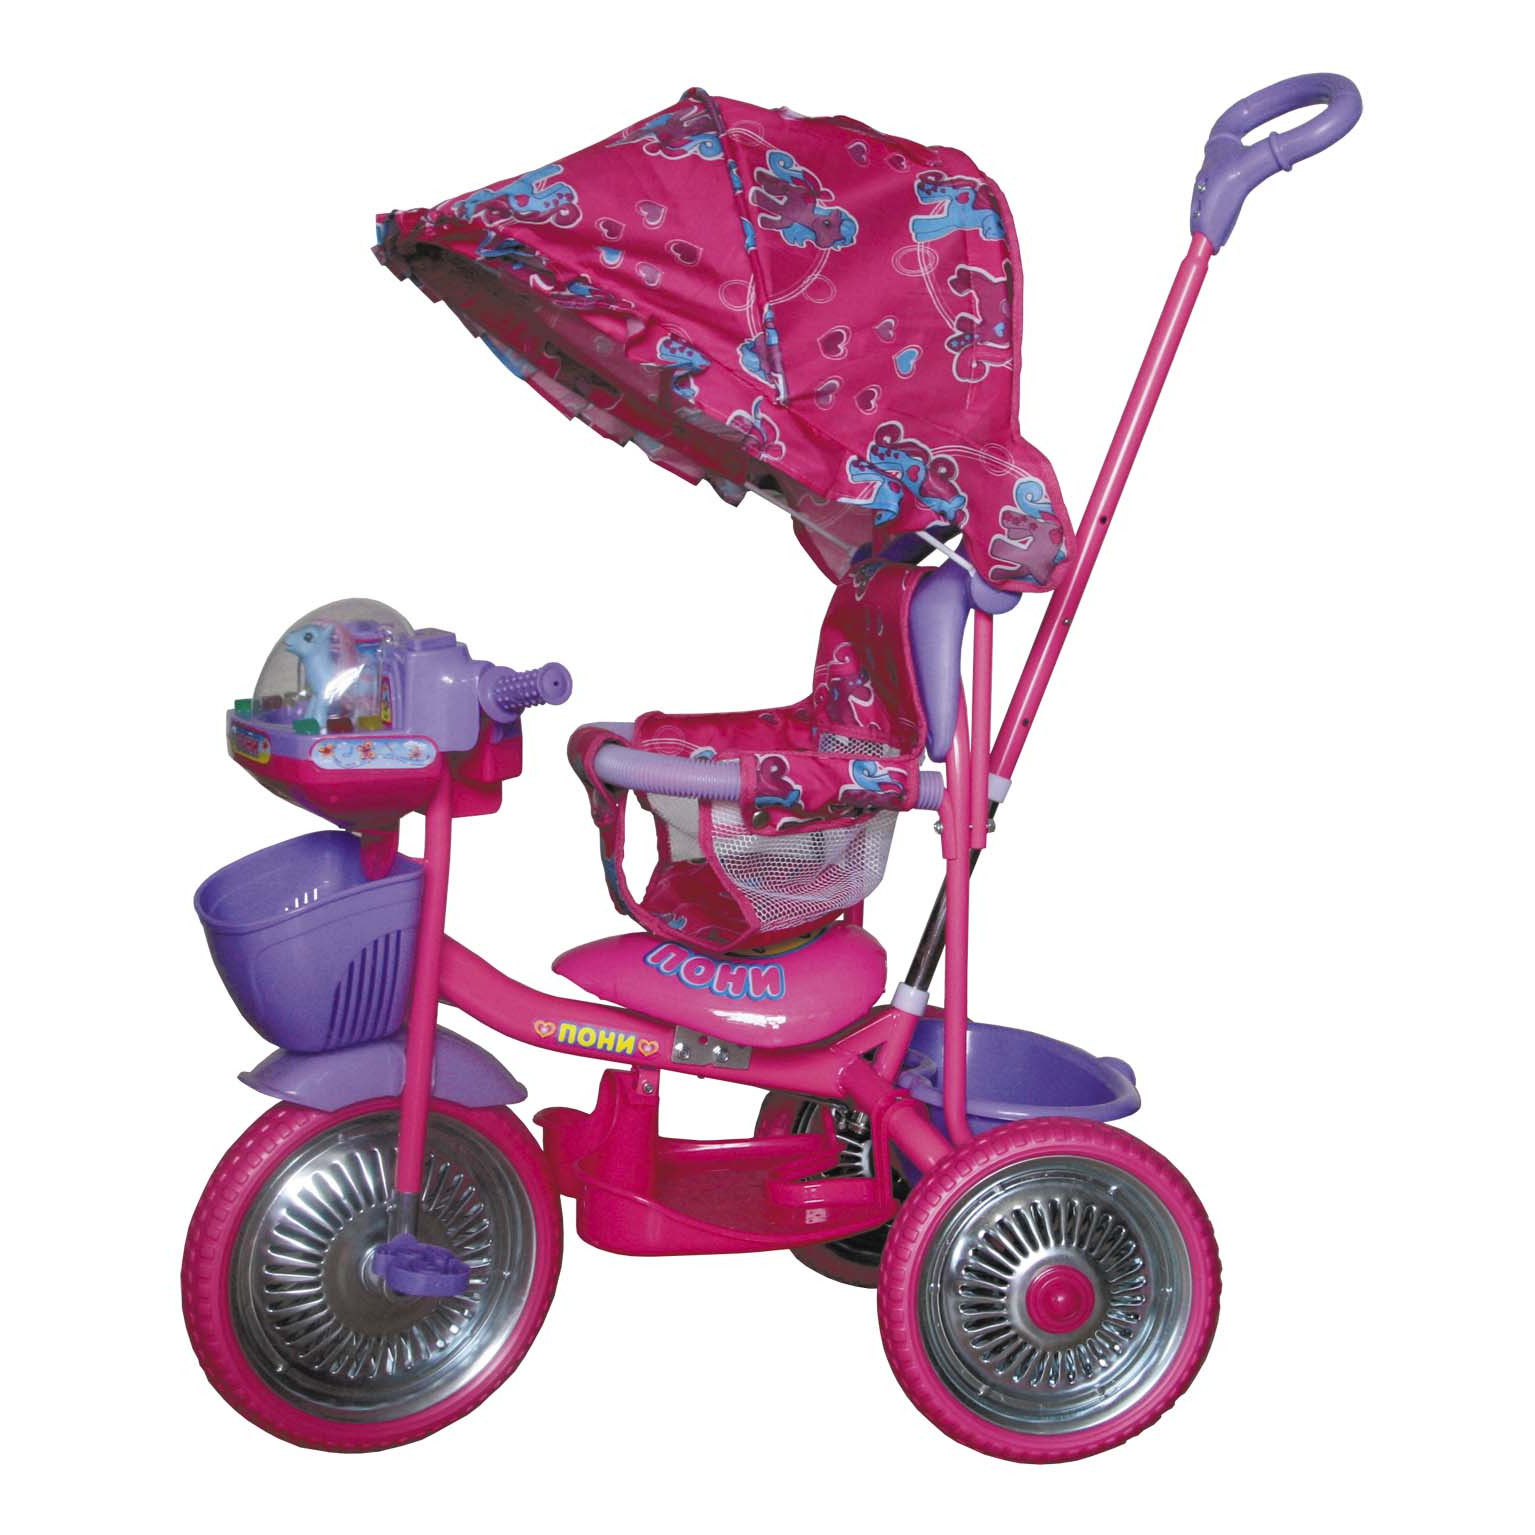 Детский трехколесный велосипед с ручкой от 1. Велосипед 3-х колесный "Чижик". Детский велосипед Чижик трехколесный с ручкой. Розовый трехколесный велосипед Чижик. Трехколесный велосипед Dendi tr16015 розовый.